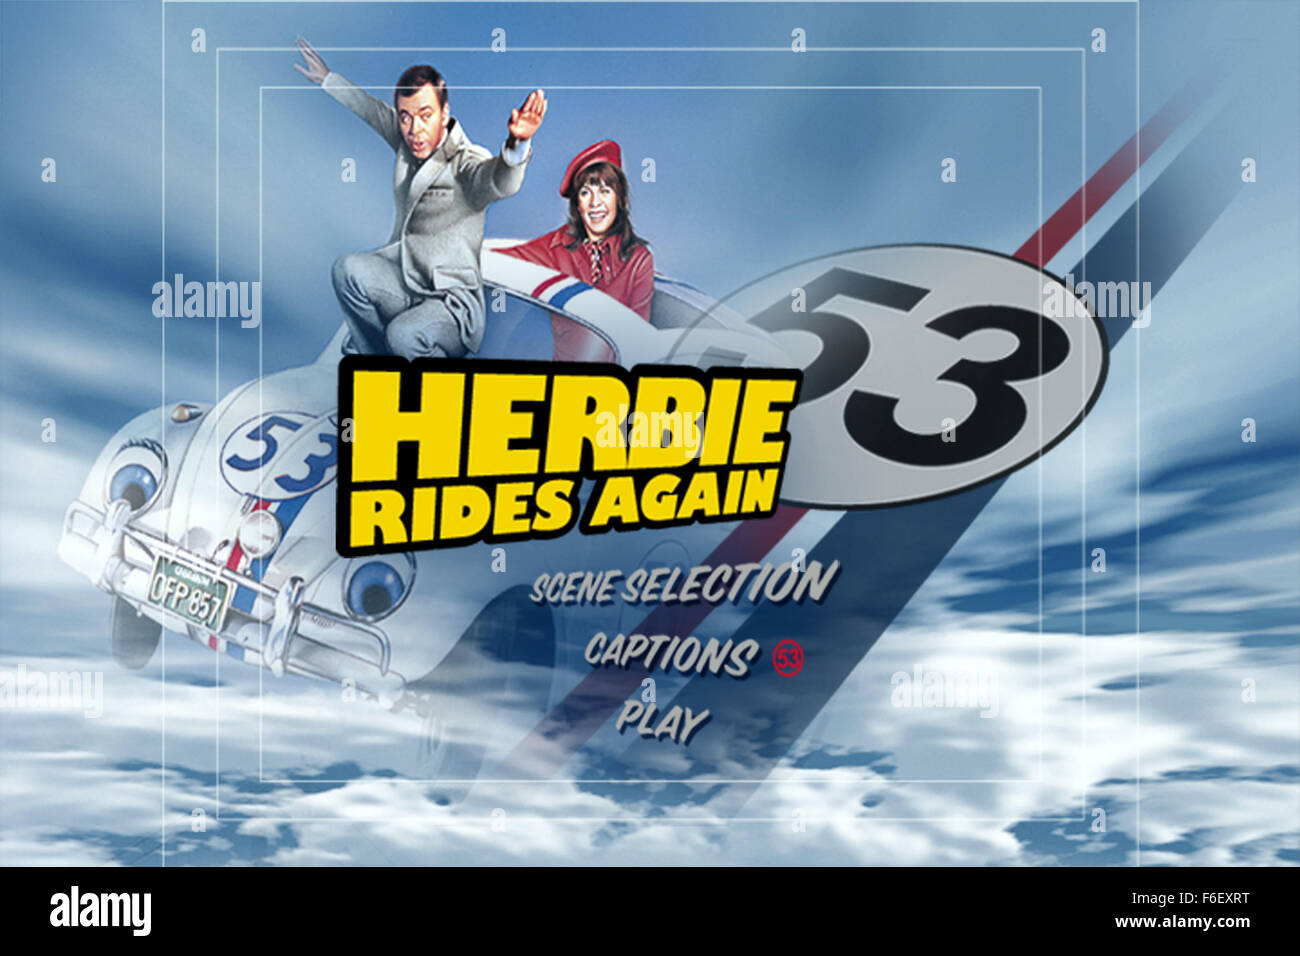 15 févr., 1974 ; San Francisco, CA, USA ; l'affiche pour l'aventure familiale/comédie 'Herbie Rides Again' réalisé par Robert Stevenson. Banque D'Images